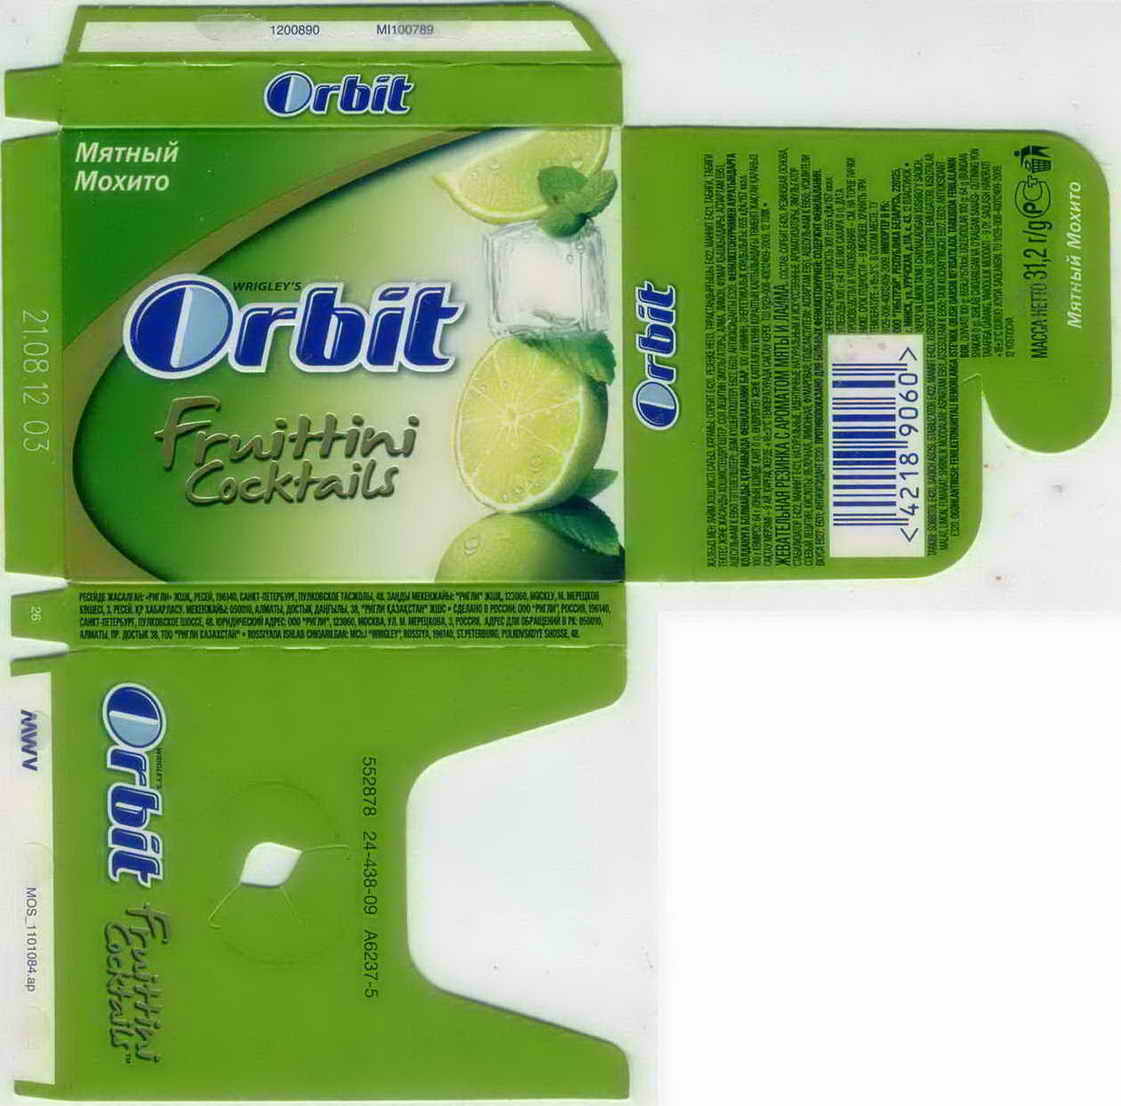 ORBIT ministicks BOX